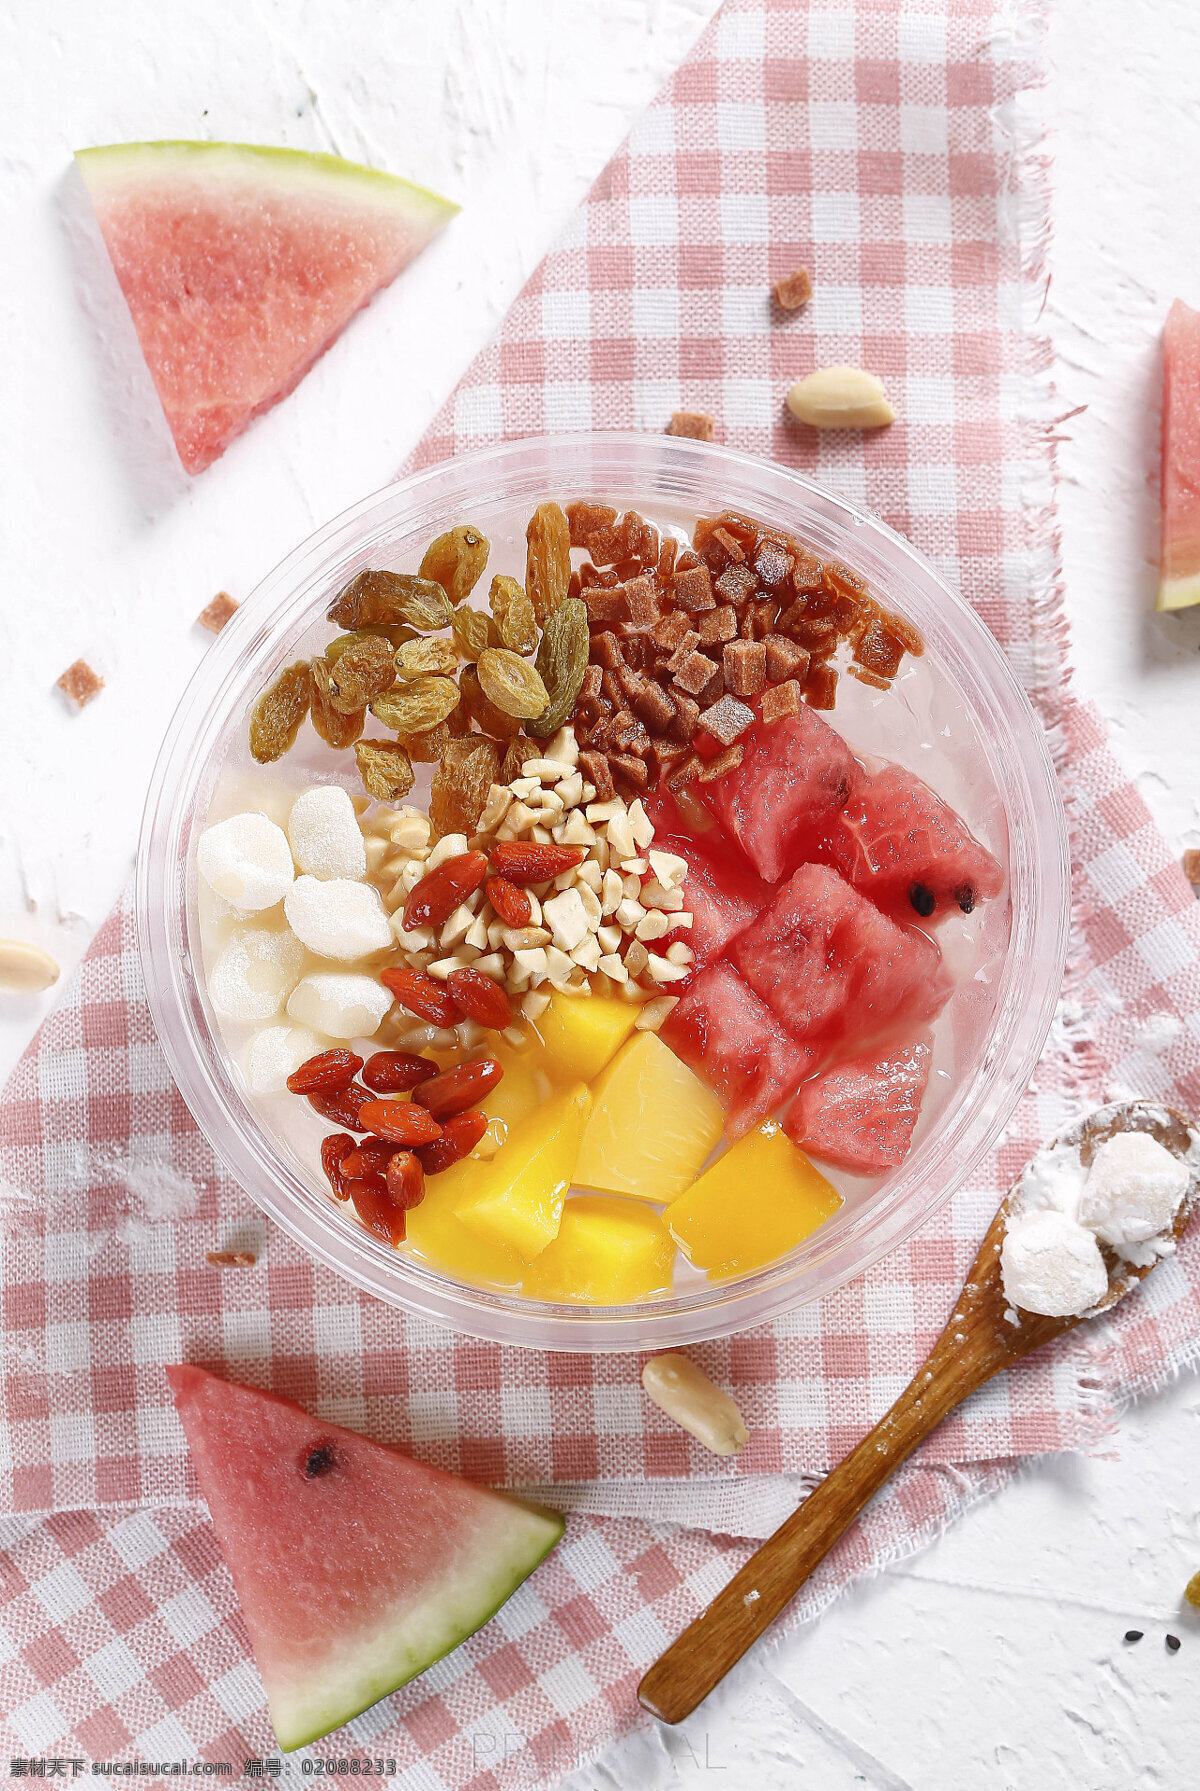 水果冰粉 美味 传统 清凉 解释 芒果 西瓜 冰粉 餐饮美食 传统美食